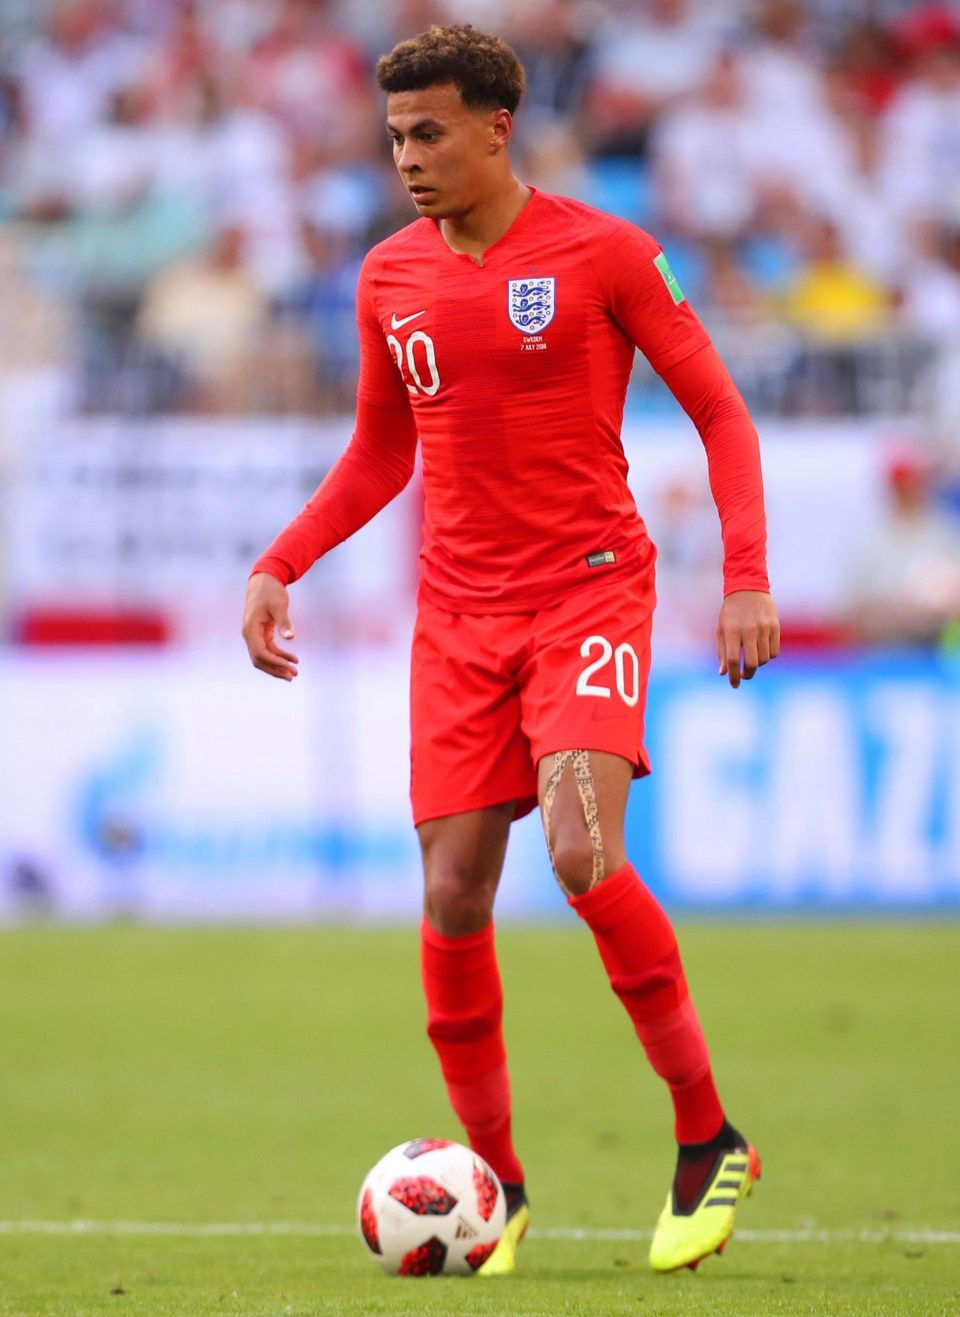 Dele Alli làm trò mê tín cầu may, tuyển Anh gặp vận đỏ trọng tài ở bán kết World Cup - Ảnh 3.